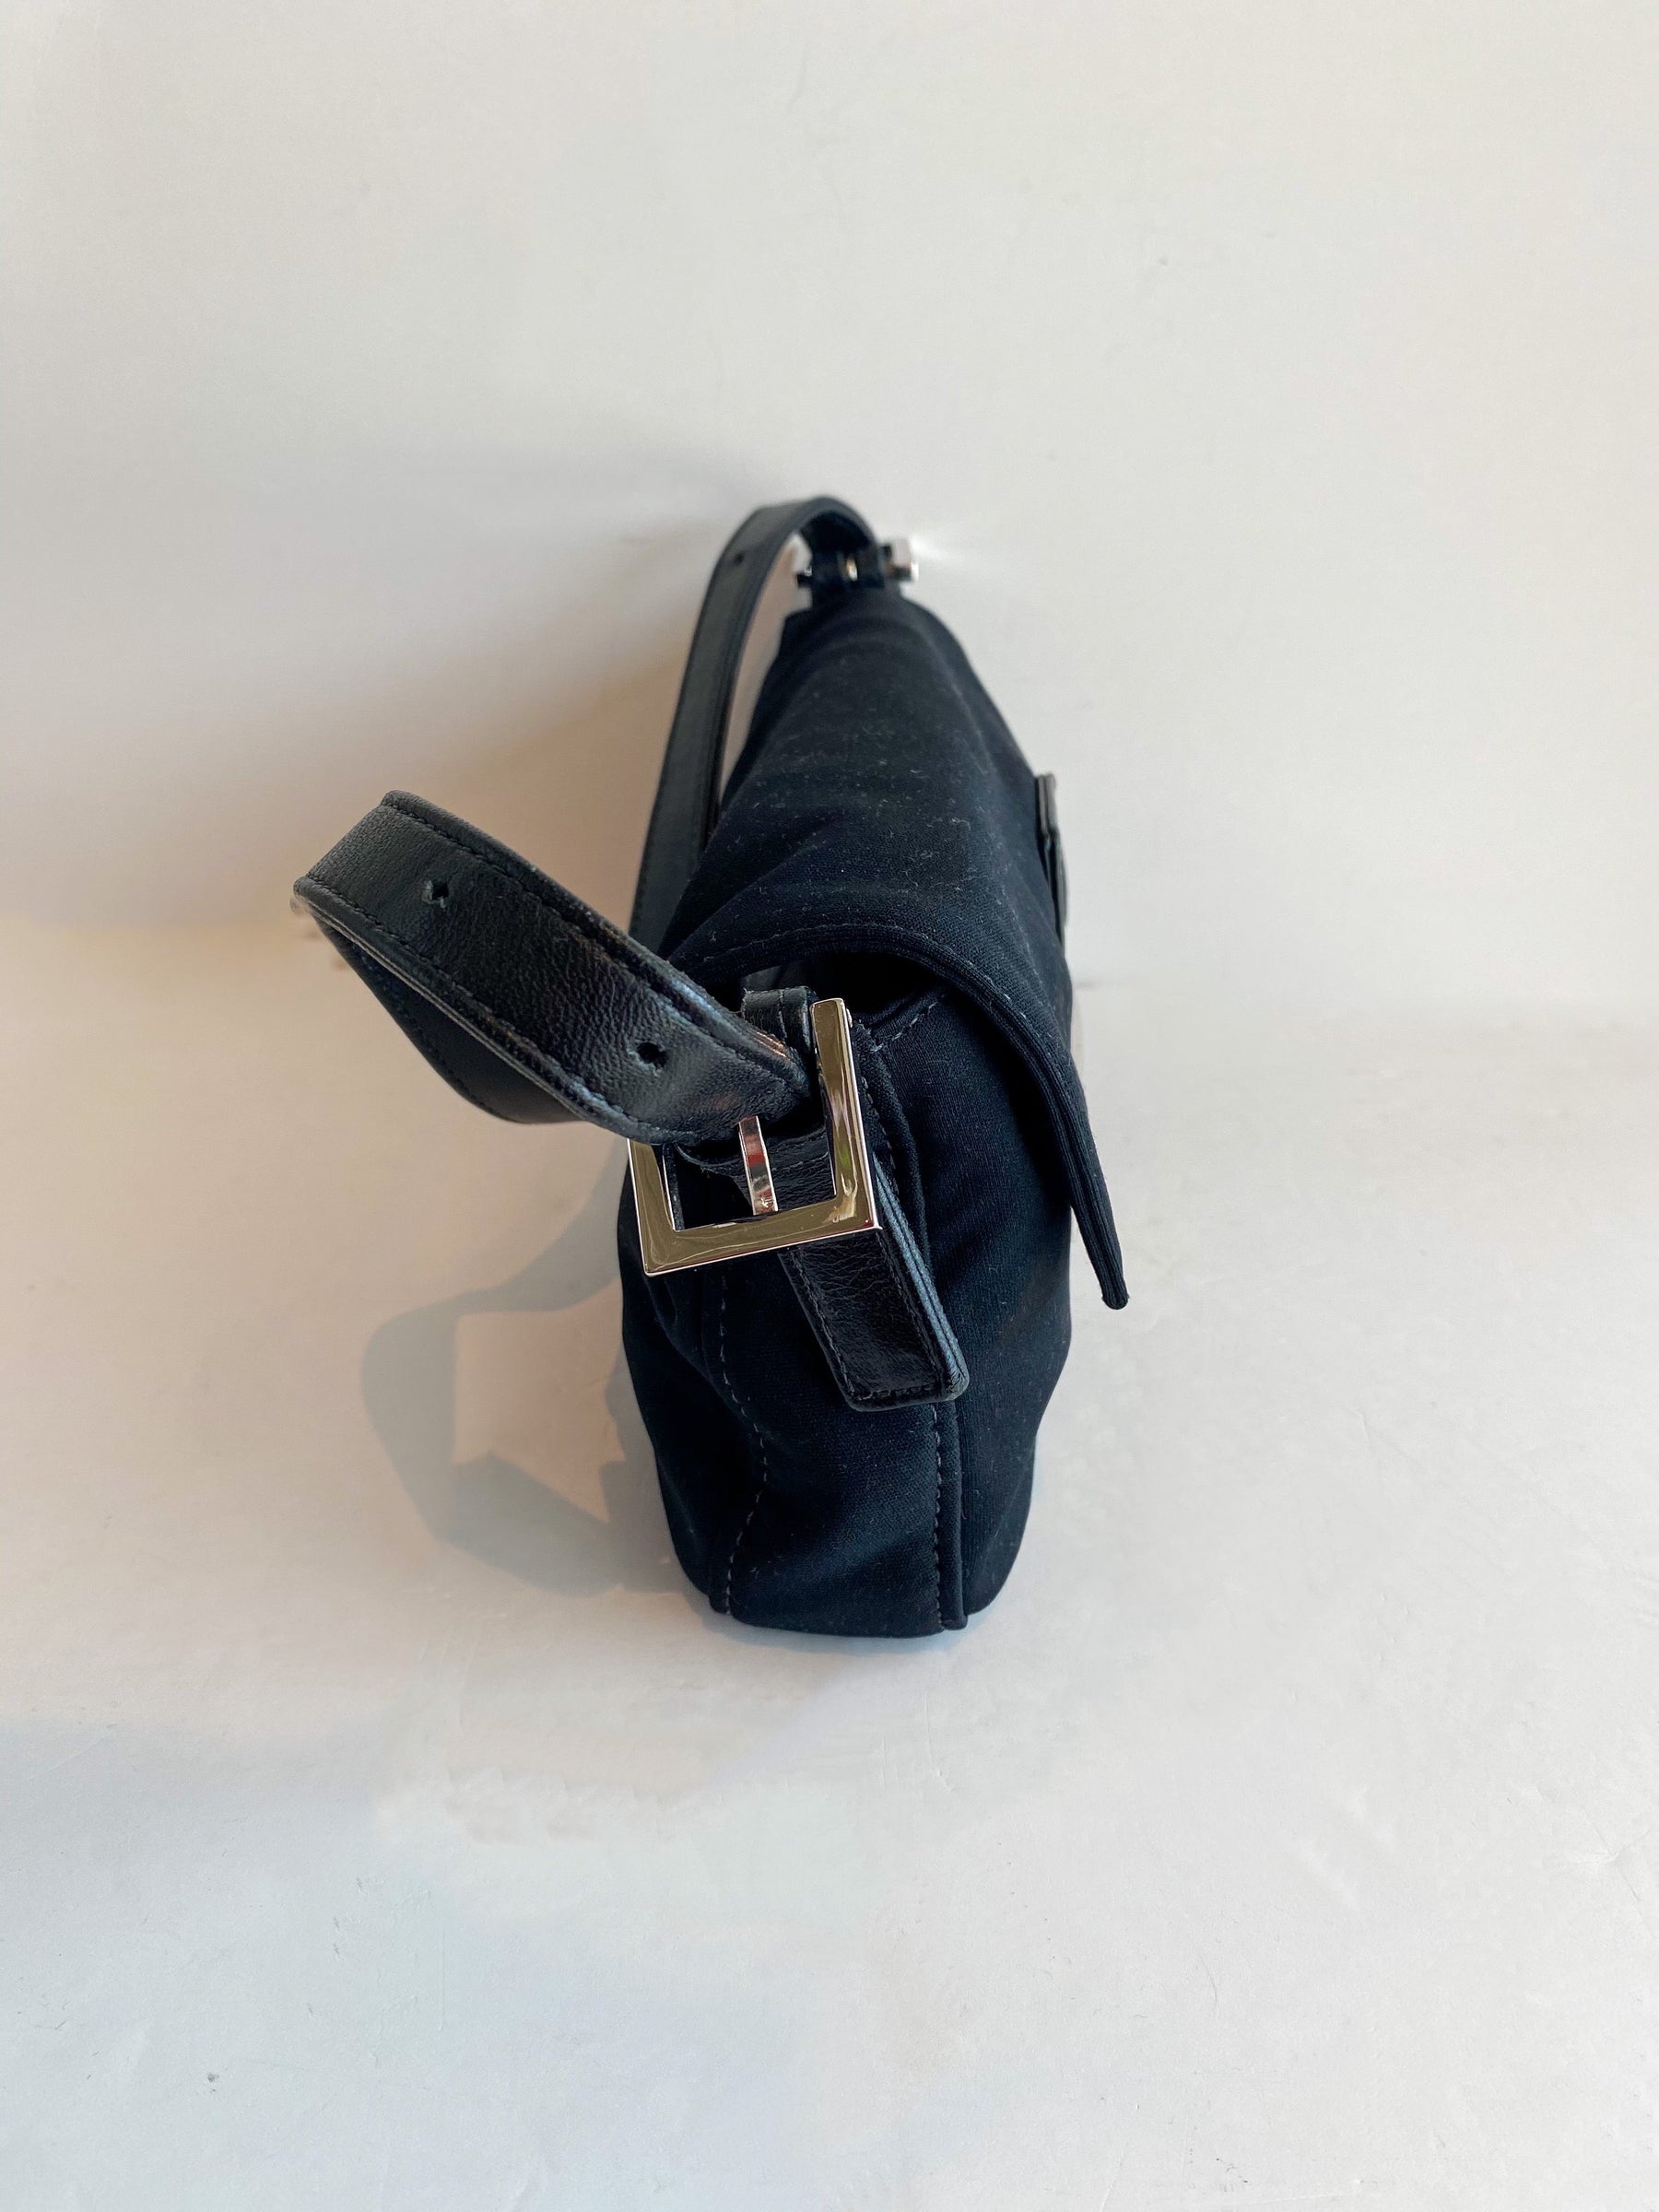 Fendi Baguette Shoulder Bag Black Side of Bag